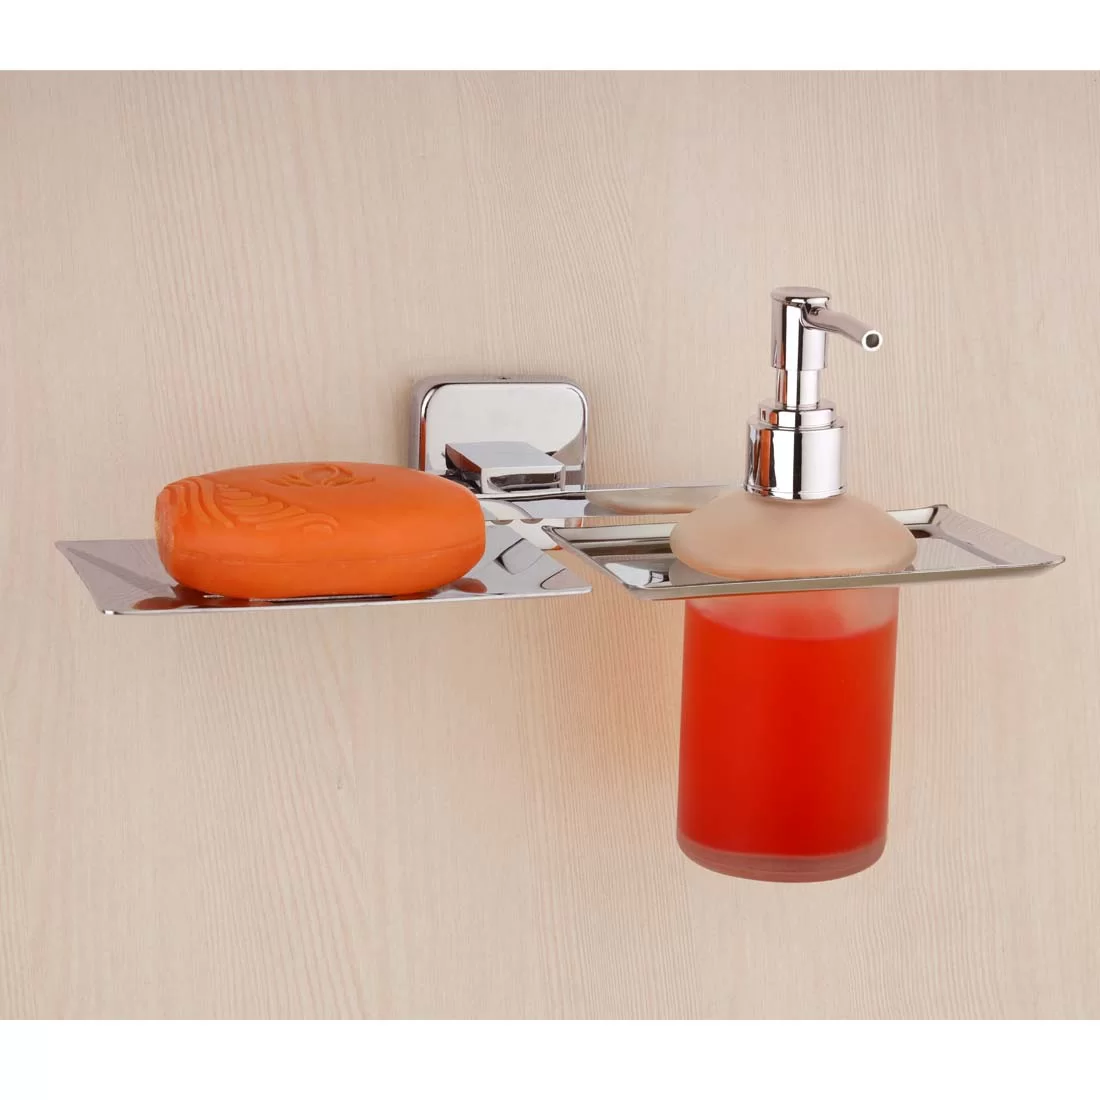 Stainless Steel 304 Grade Bathroom Soap Holder/Soap Stand/Soap Dish for  Bathroom/Bathroom Accessories Chrome Finish (6)